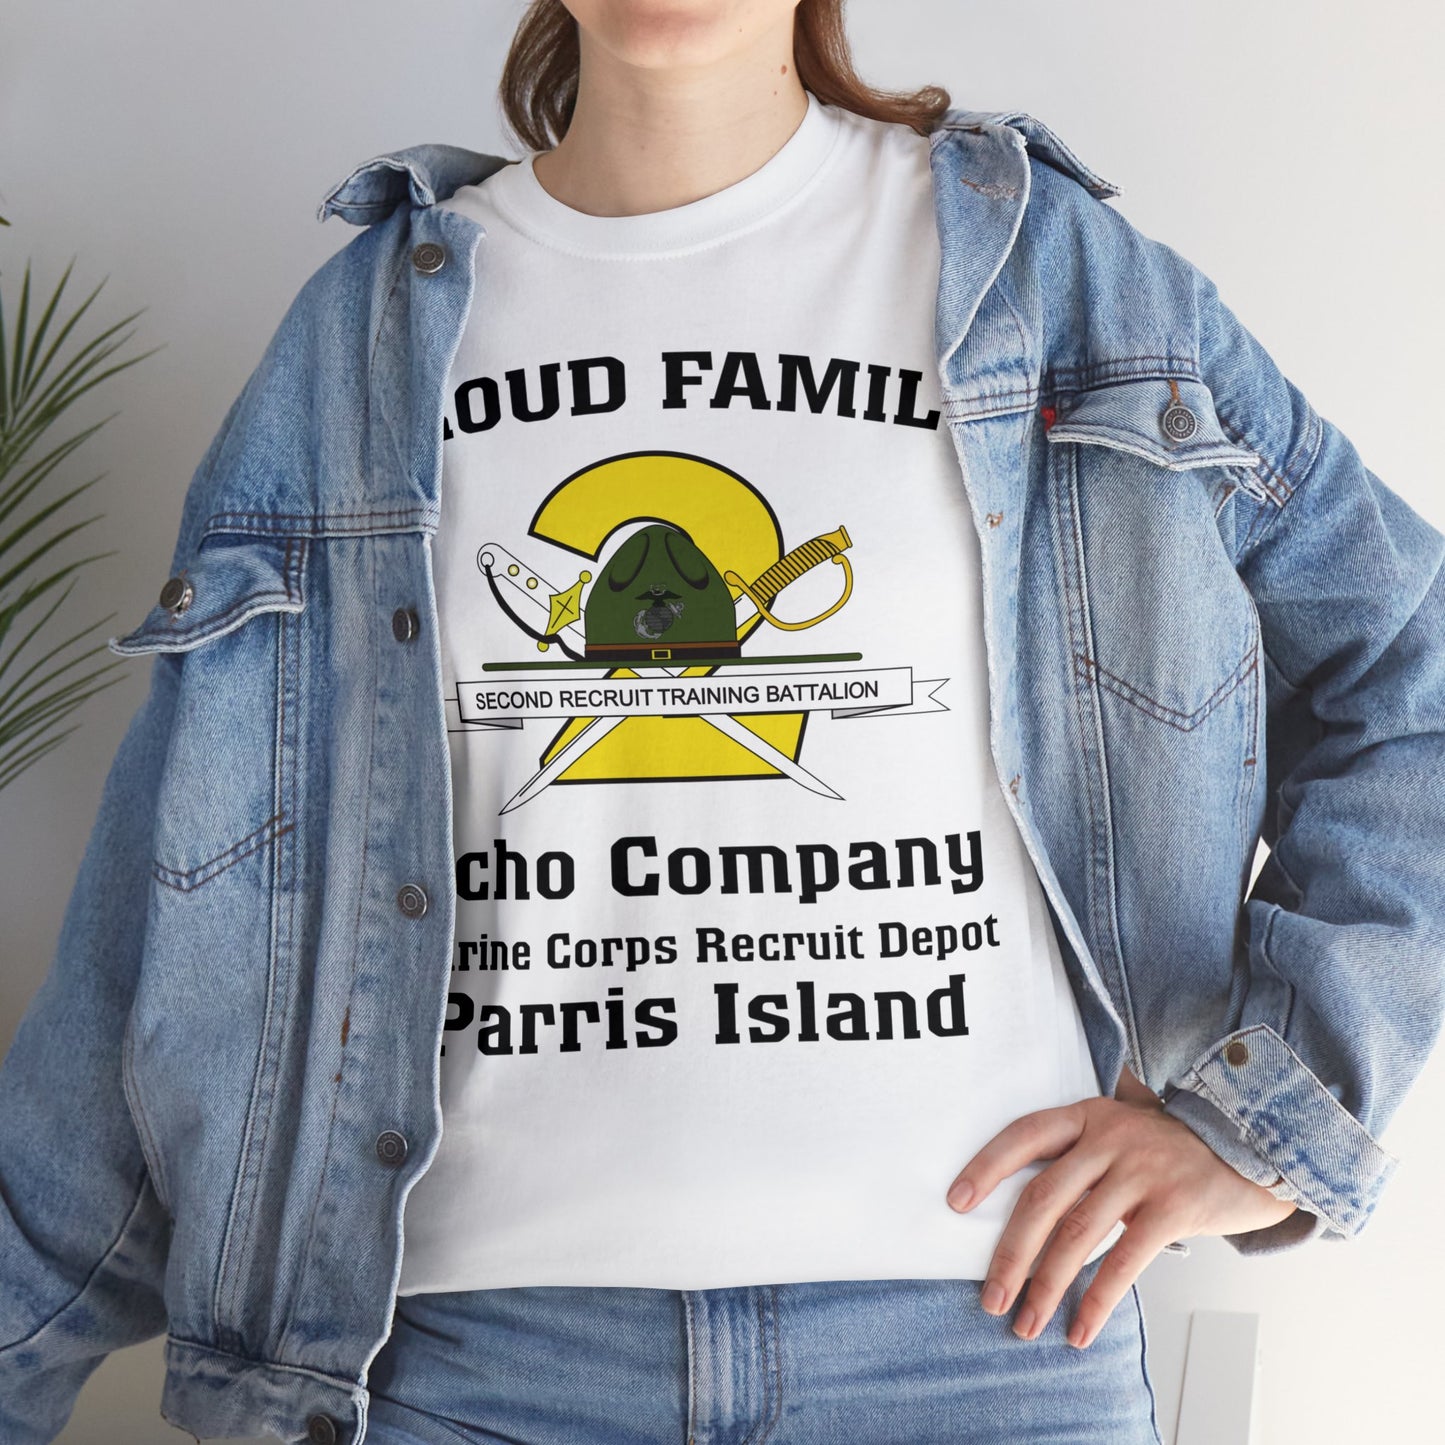 T-Shirt: Echo Co. MCRD Parris Island (2nd Battalion Crest)